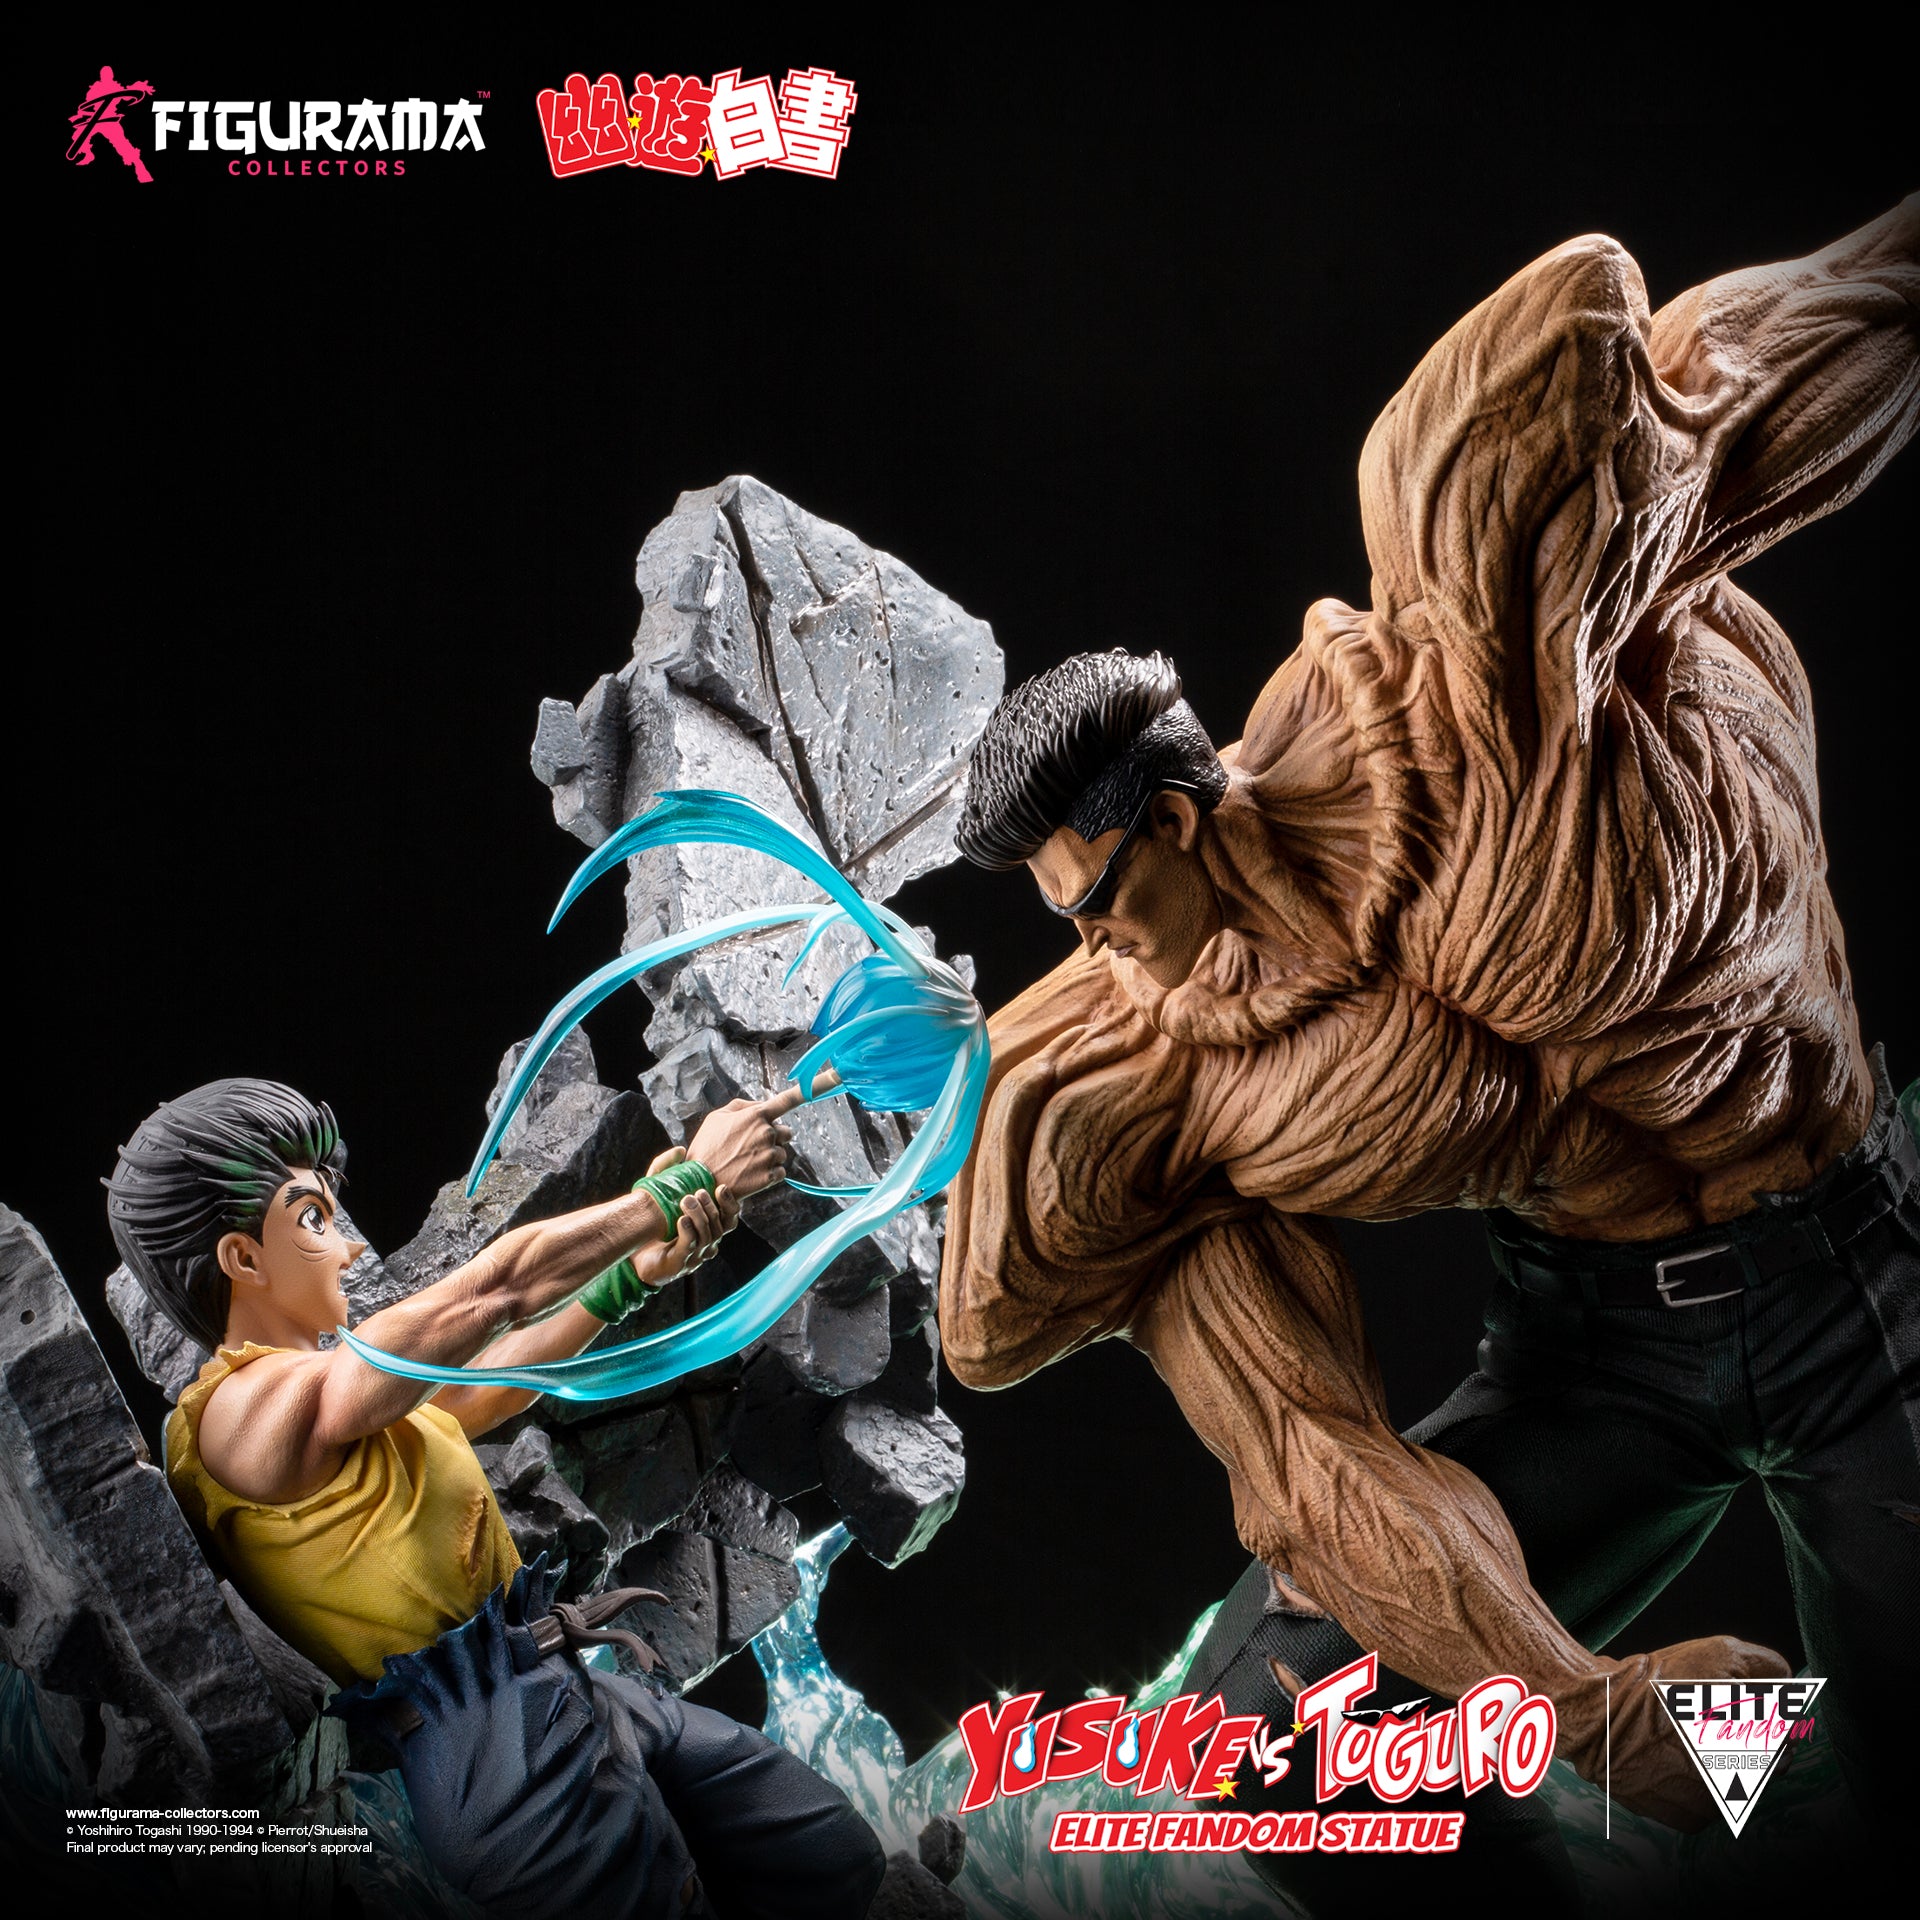 Yu Yu Hakusho: Yusuke vs Toguro Elite Fandom Statue - Figurama